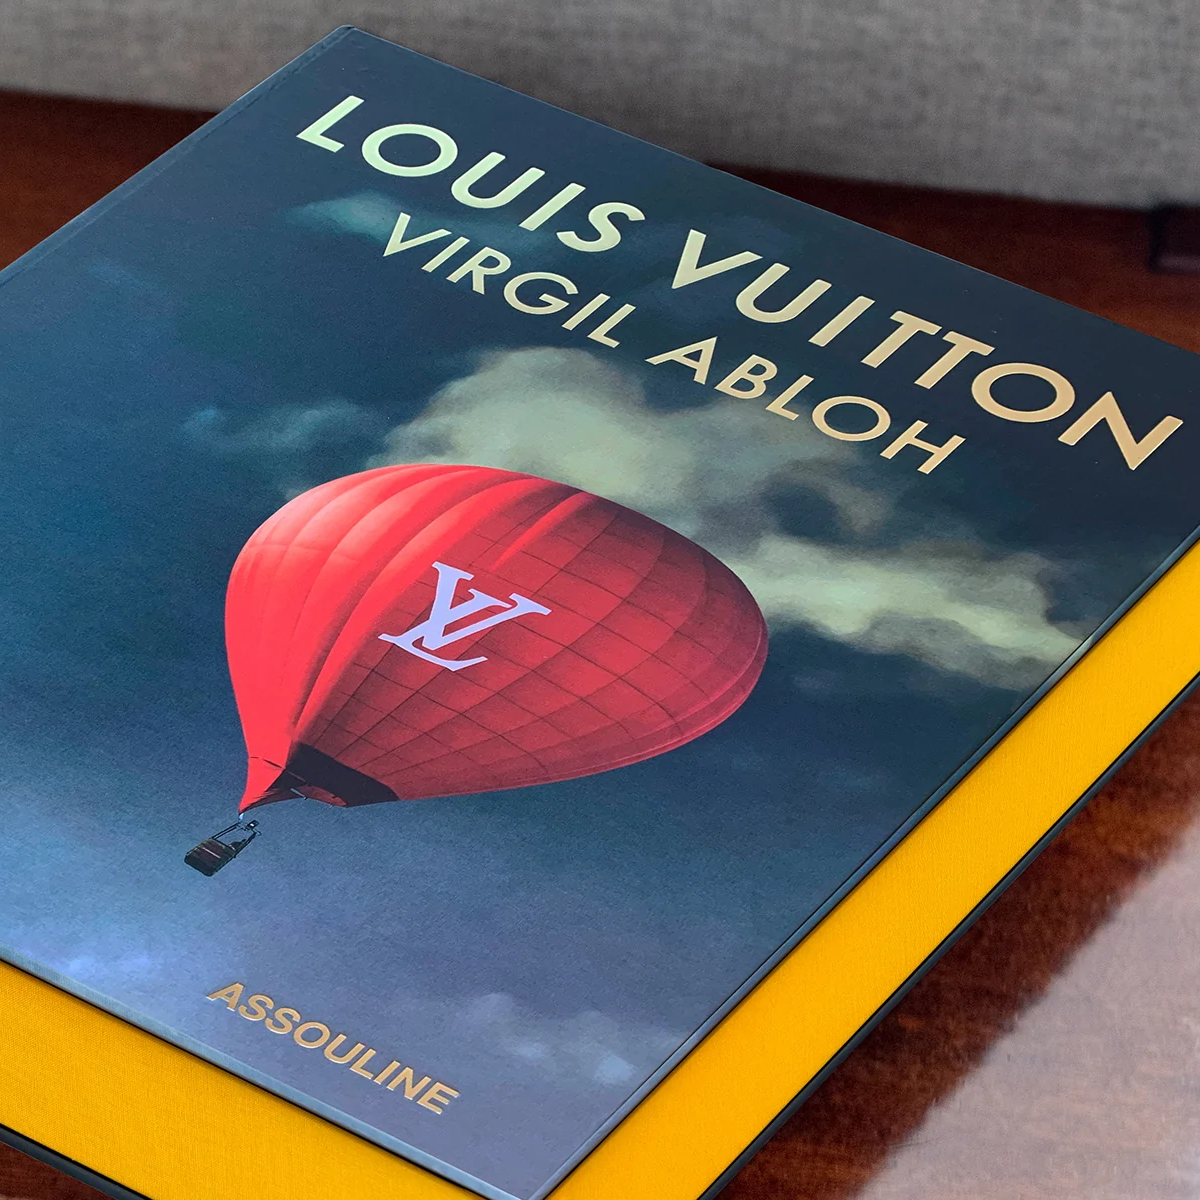 Assouline Louis Vuitton: Virgil Abloh